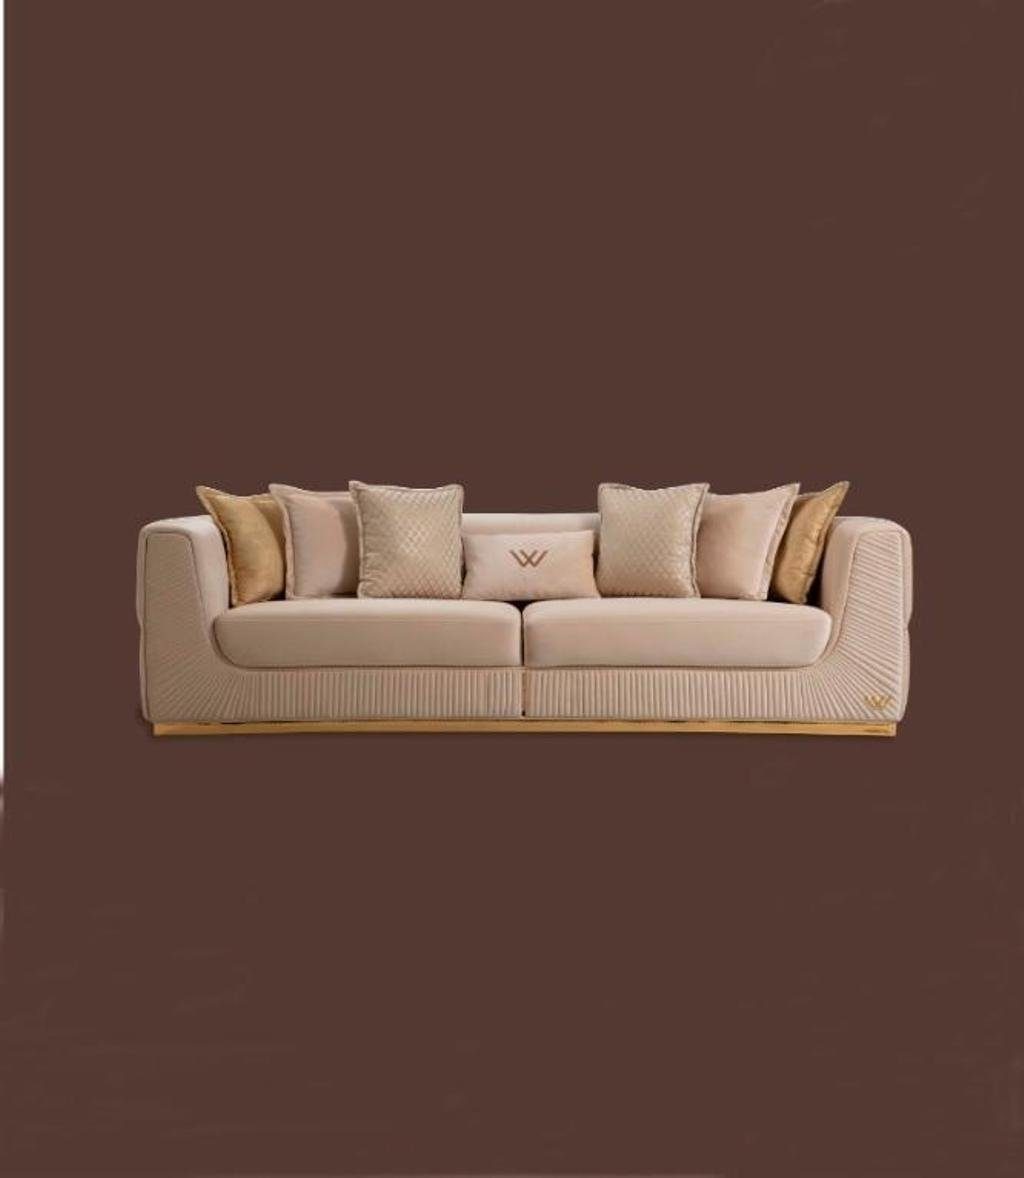 JVmoebel 4-Sitzer Sofa Made Polster Teile, Möbel, Sitzer Design 1 Sitz Relax in Sofas Europa 4 Couchen Leder